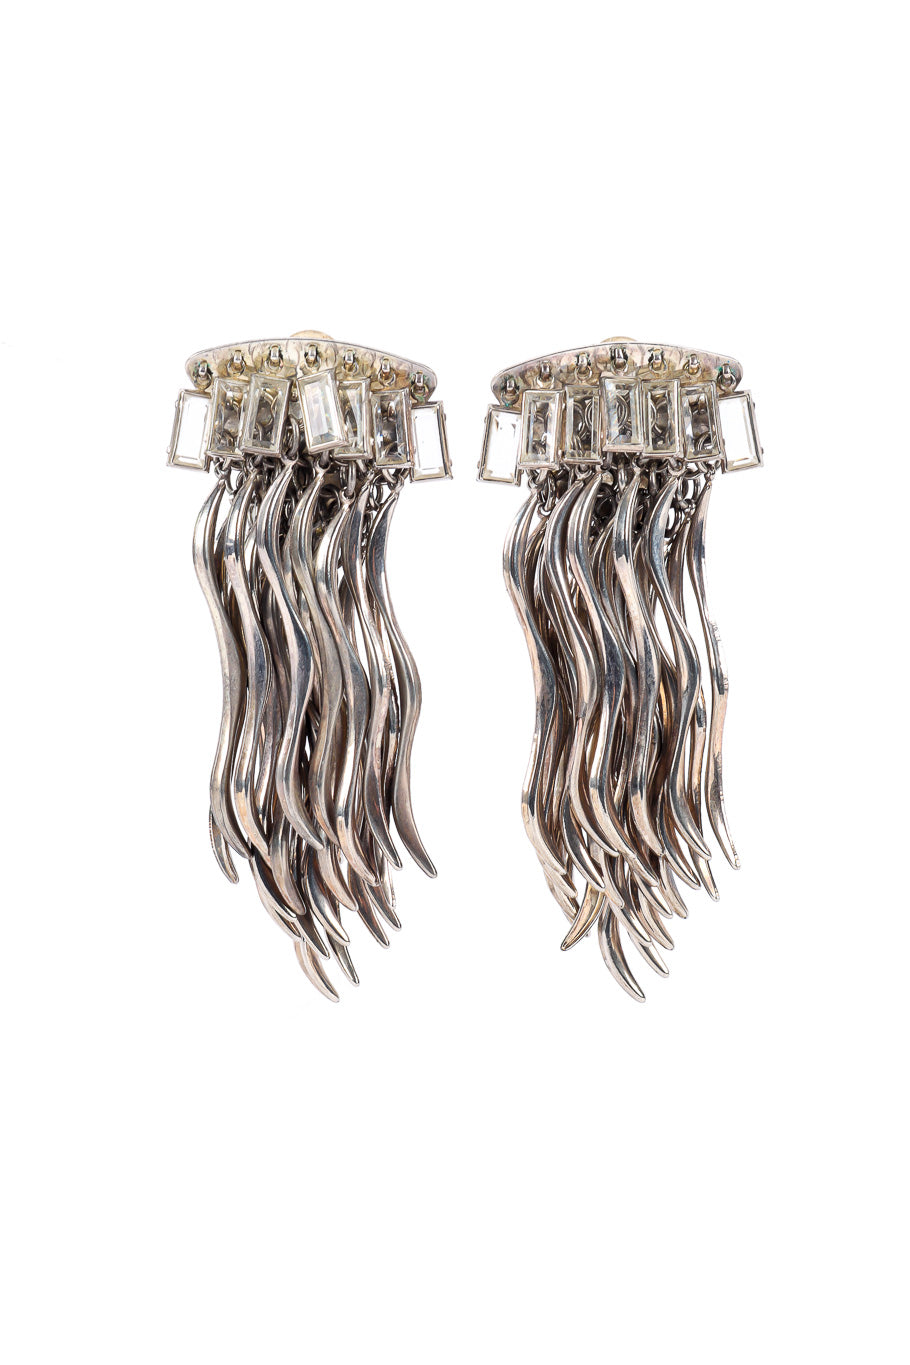 Vintage Sorrelli Silver Fringe Brutalist Earrings front view @Recessla